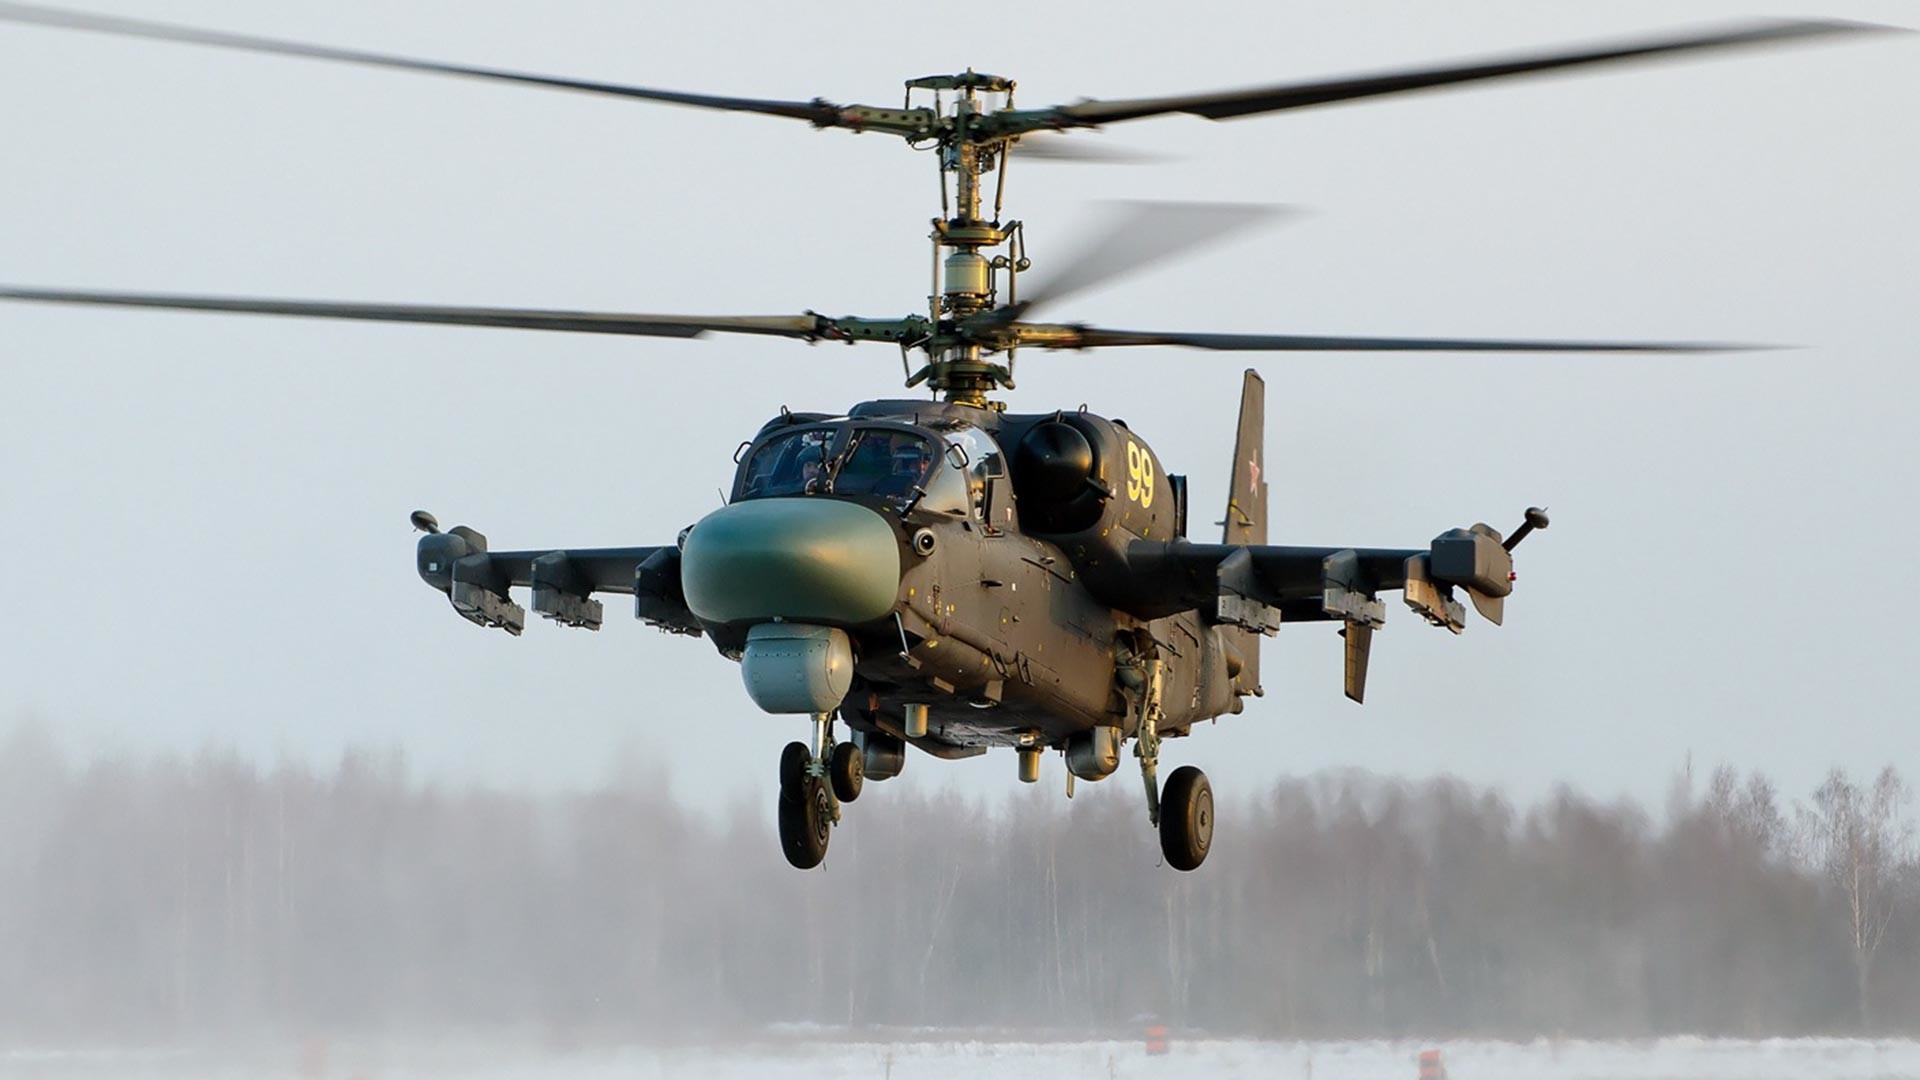 Ka-52.

